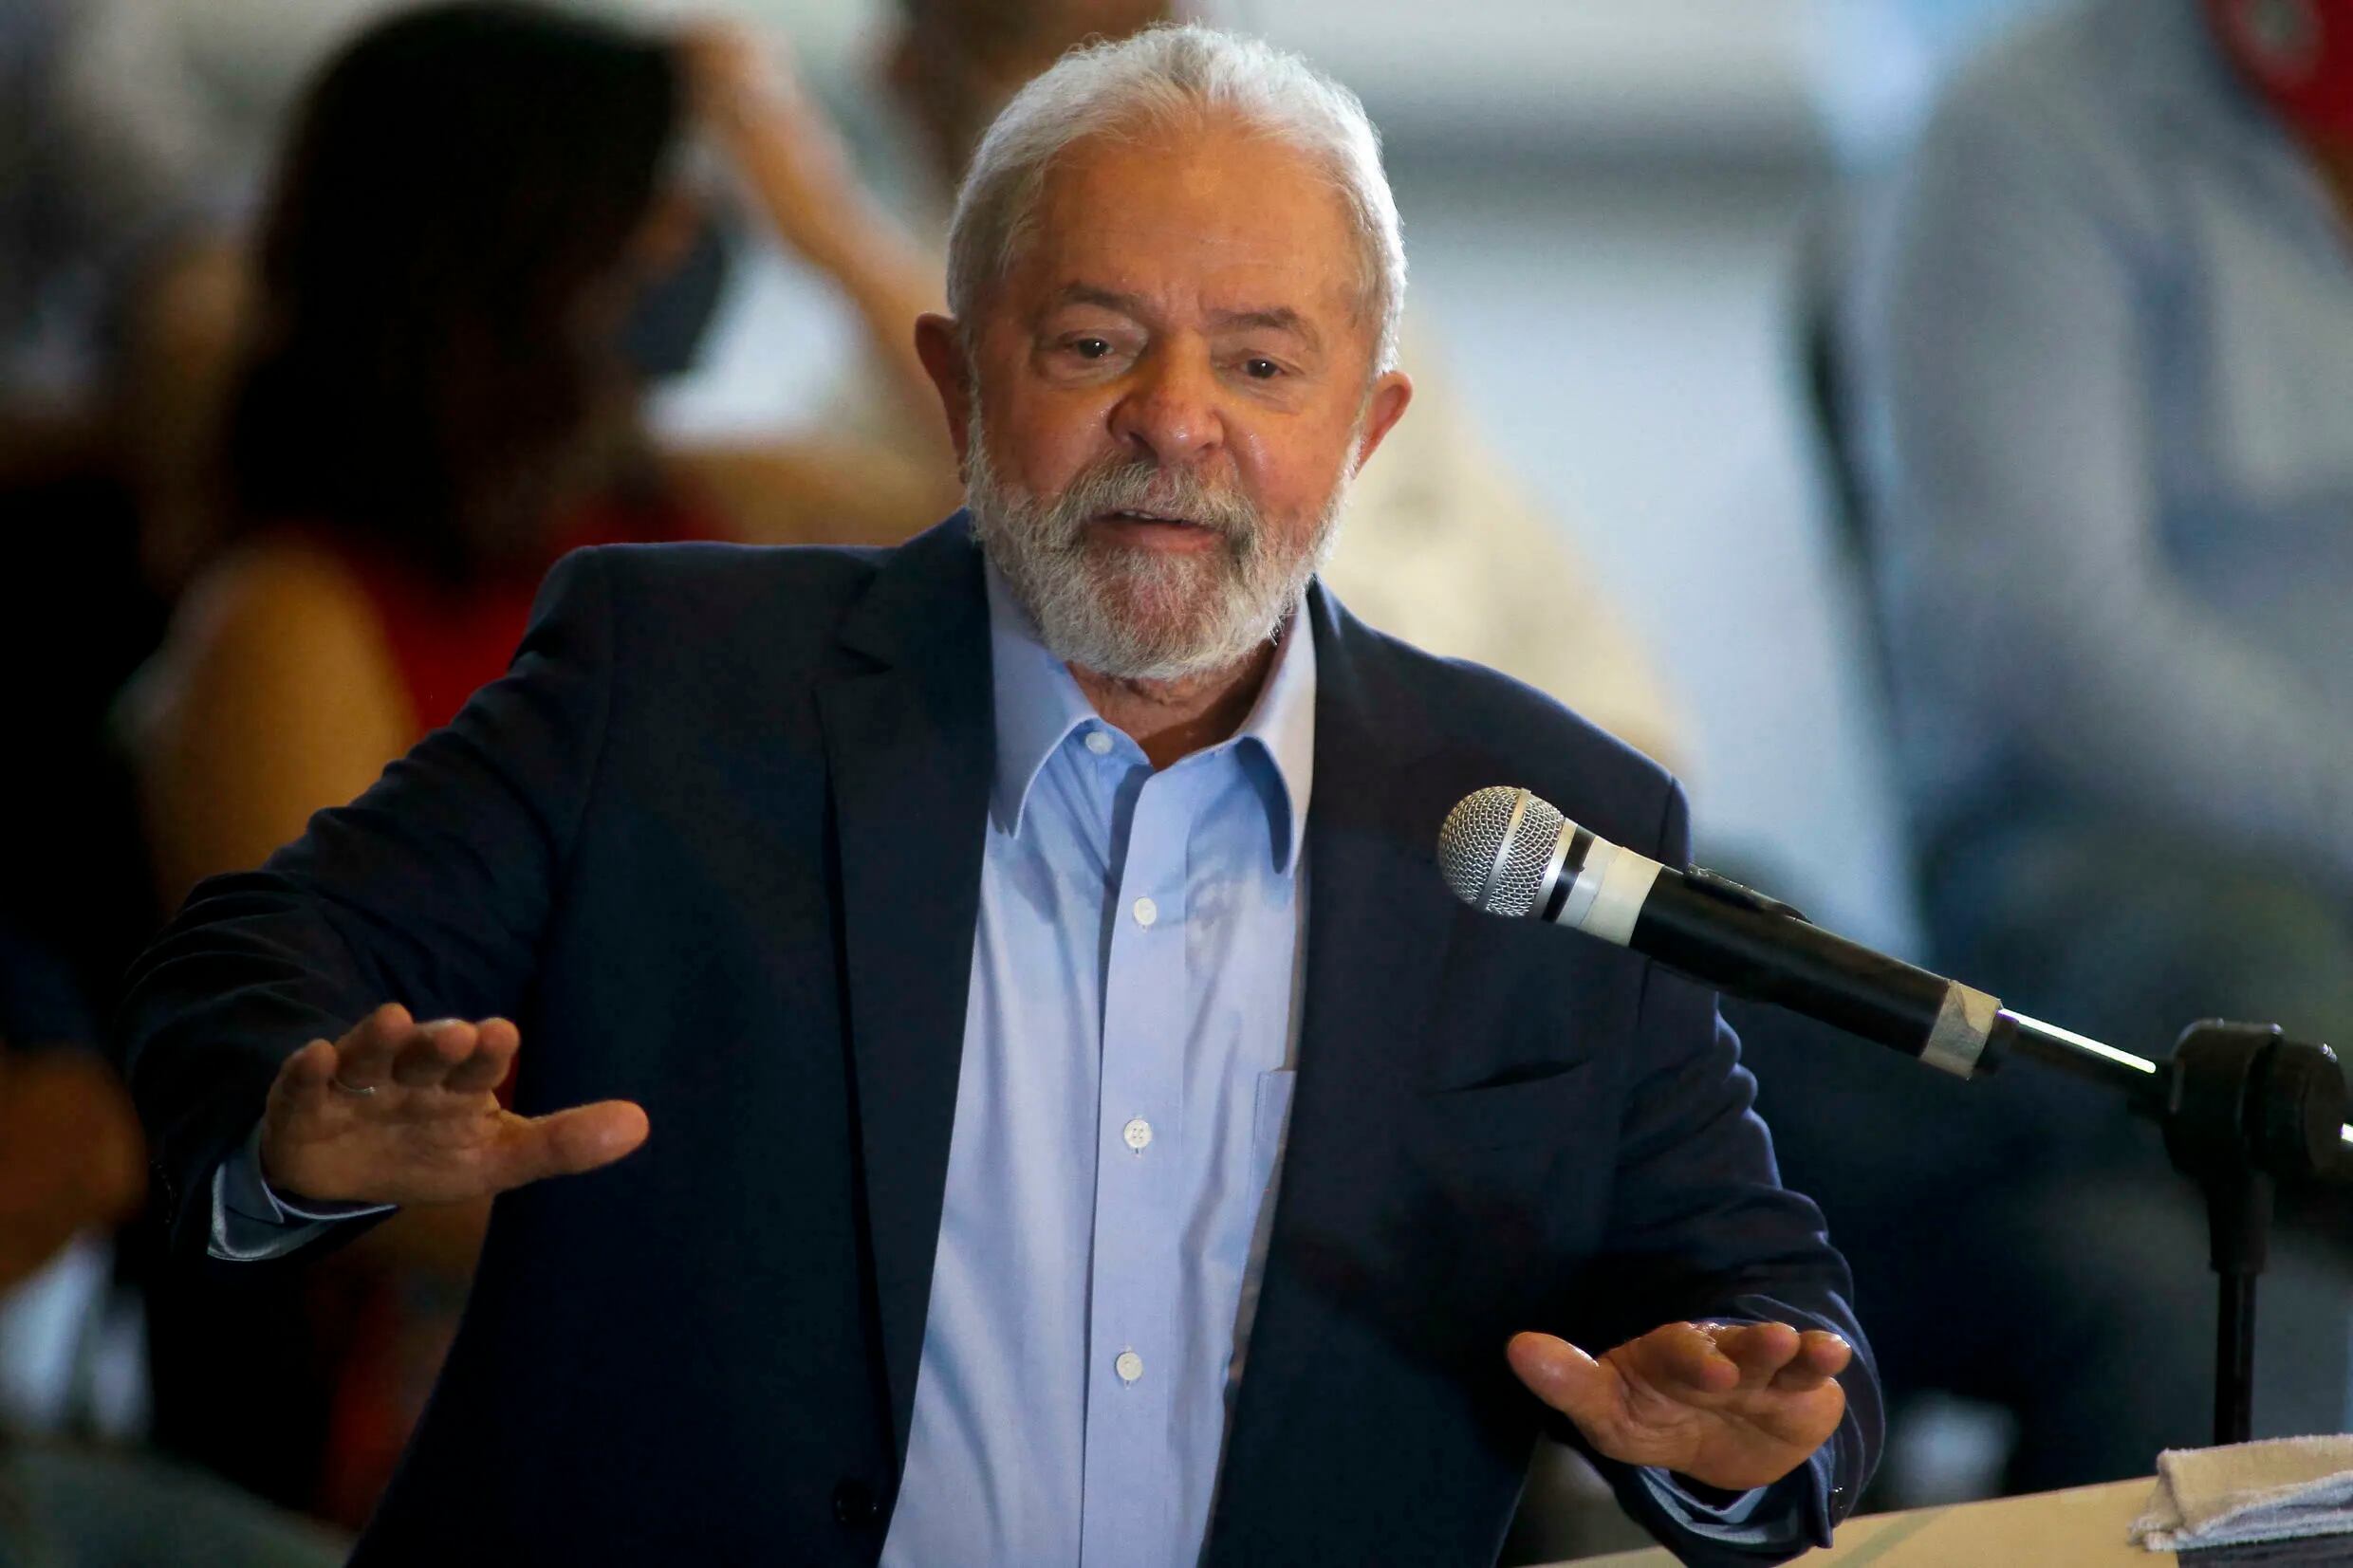  Lula da Silva, durante una conferencia de prensa en Sao Paulo, el 10 mazo2021.